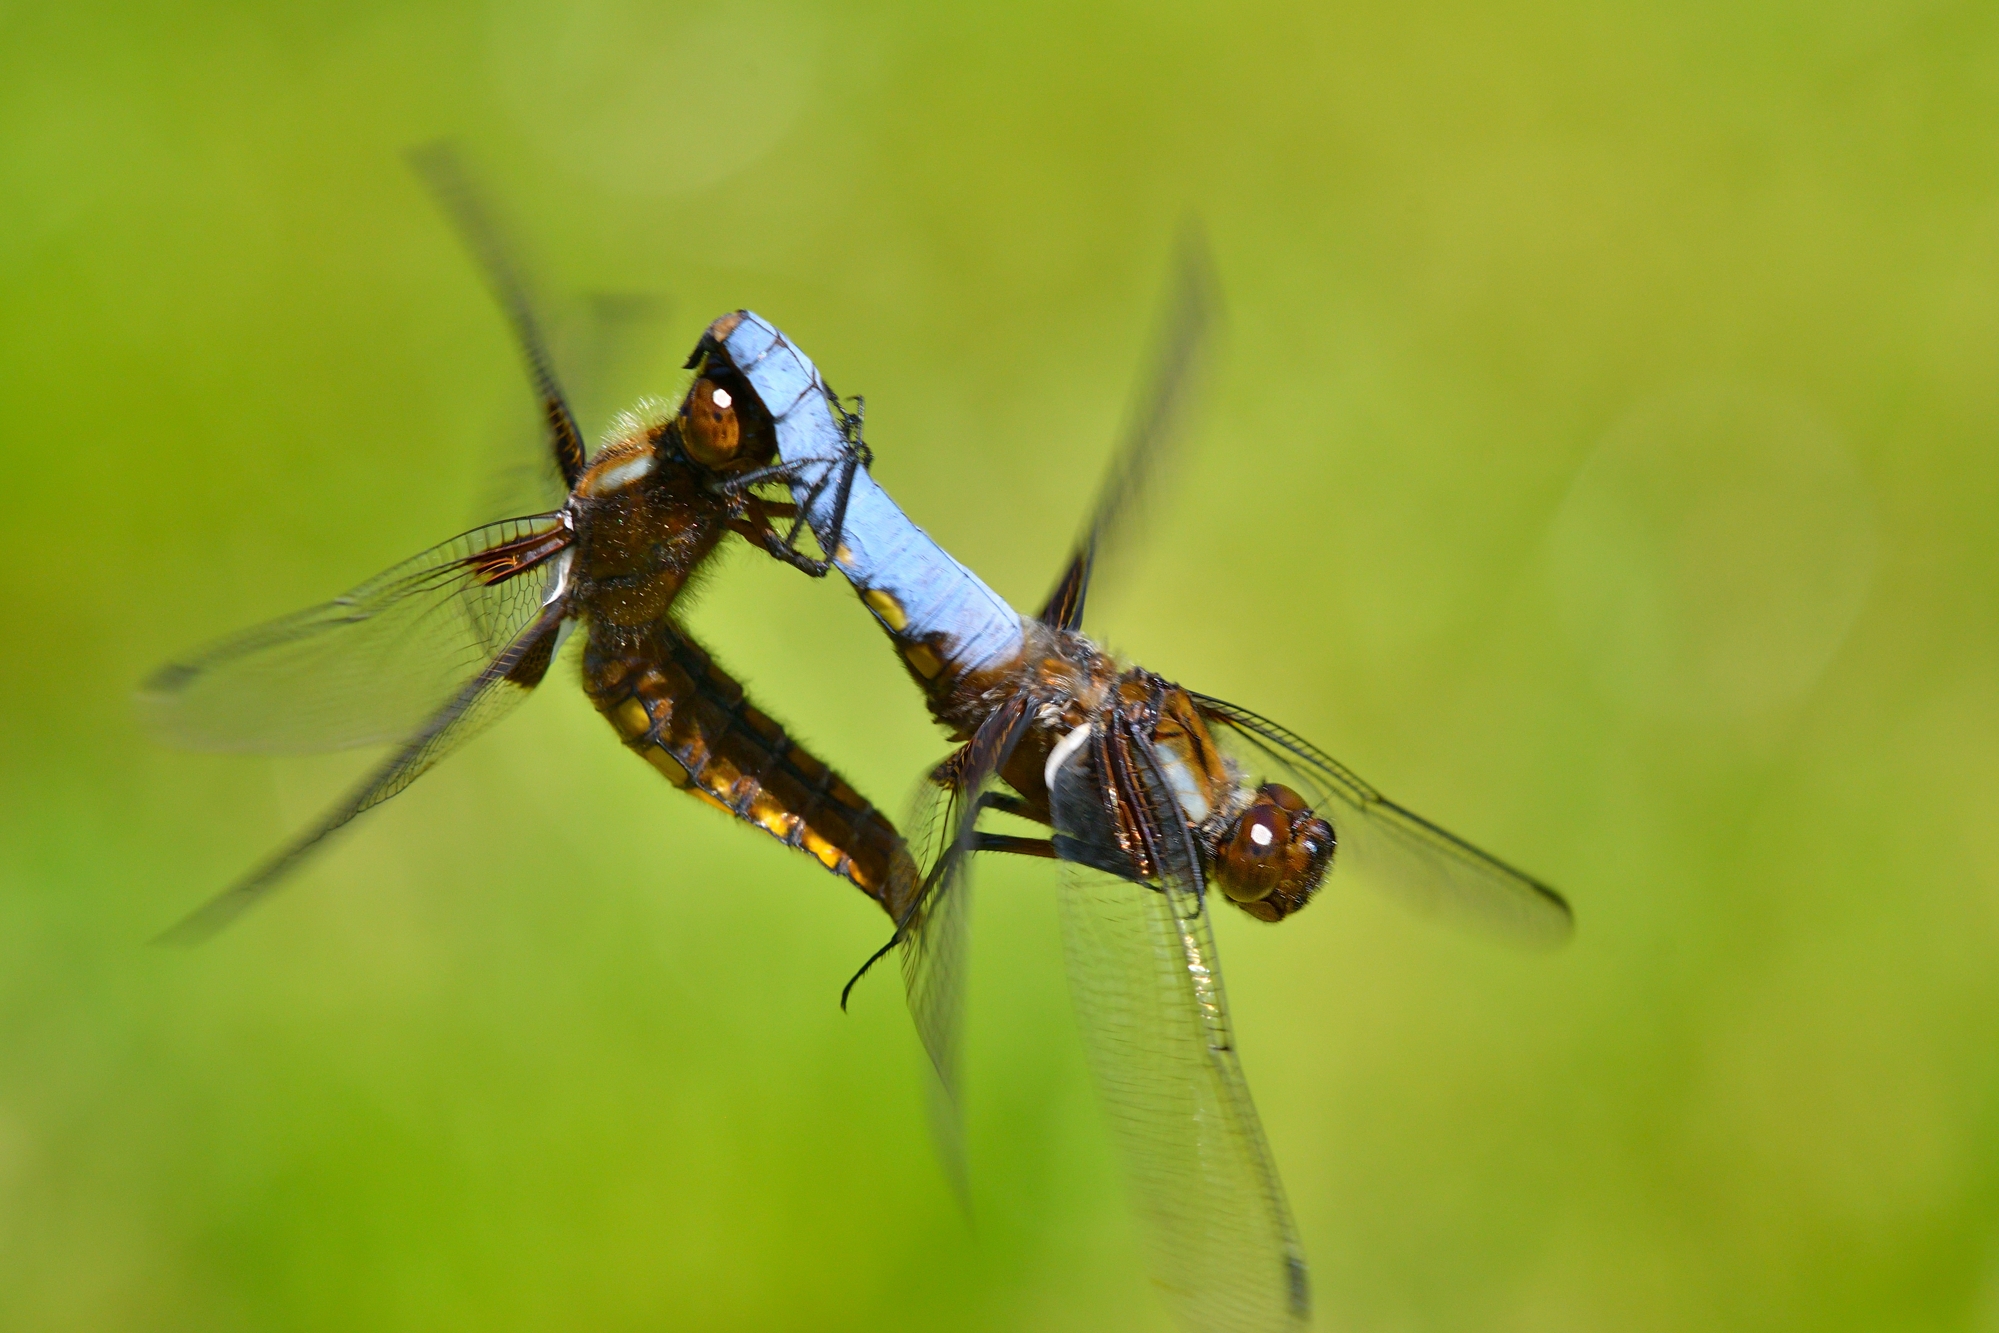 depressed dragonflies in love......